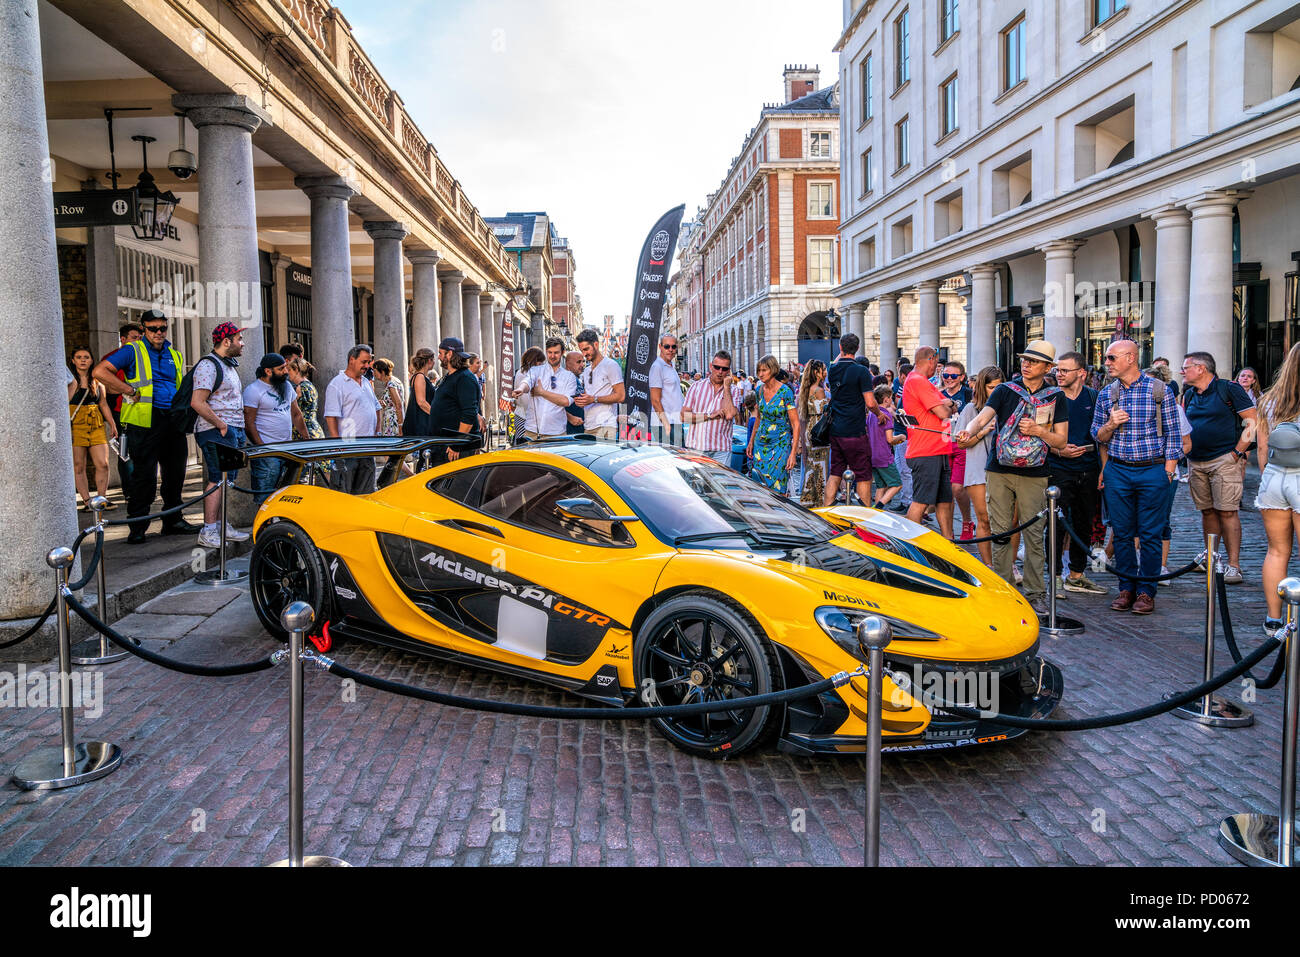 4 Aug 2018 - London, UK. Liebe Rallye Event Gumball 3000. Ultimative Supersportwagen McLaren P1 GTR in Gelb ist in Covent Garden, London angezeigt. Stockfoto